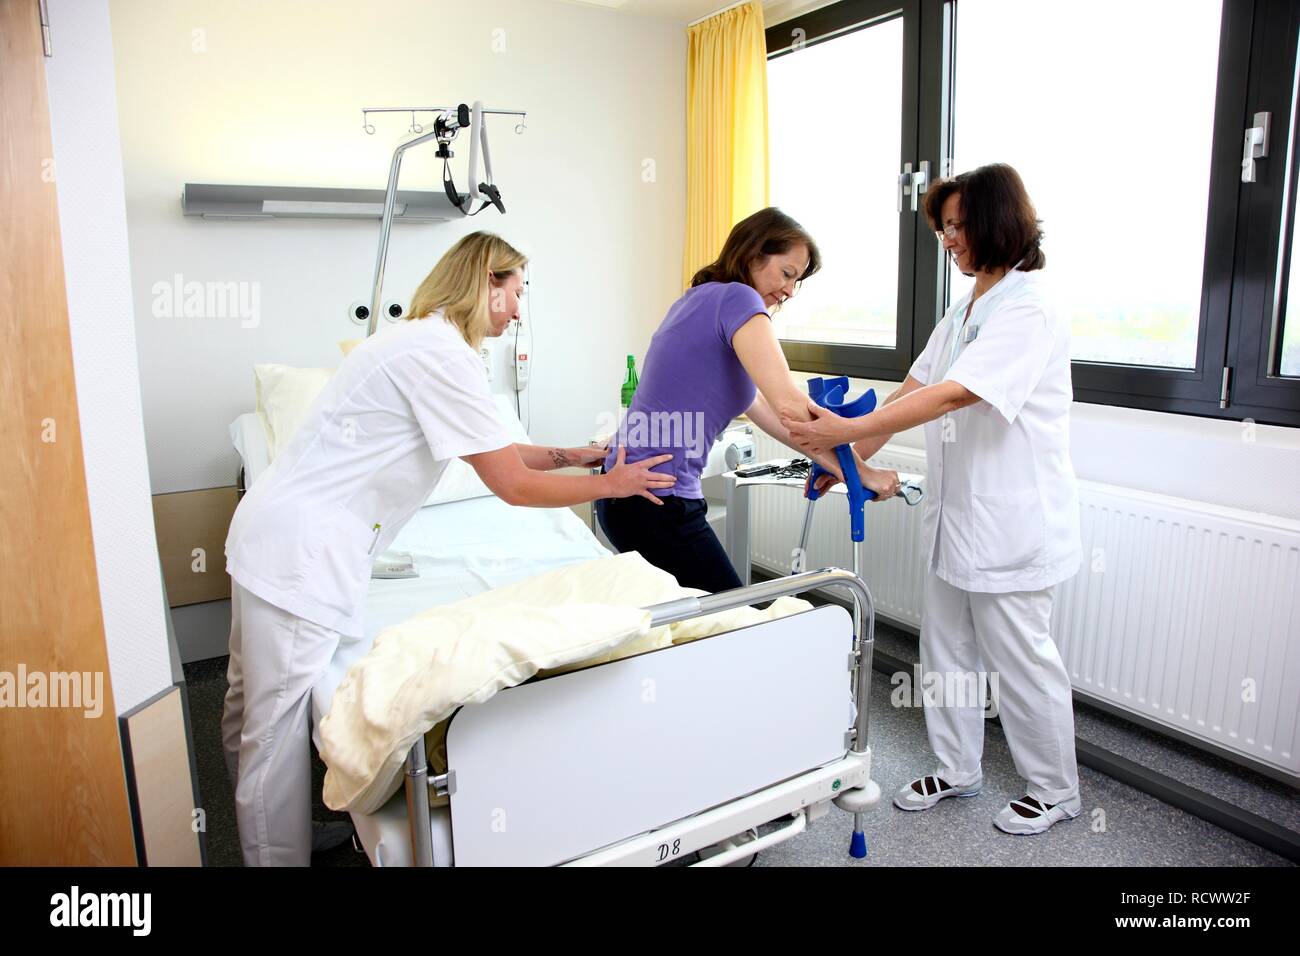 Les infirmières d'aider un patient à essayer de marcher avec des aides à la marche, la mobilisation après une opération dans un hôpital Banque D'Images